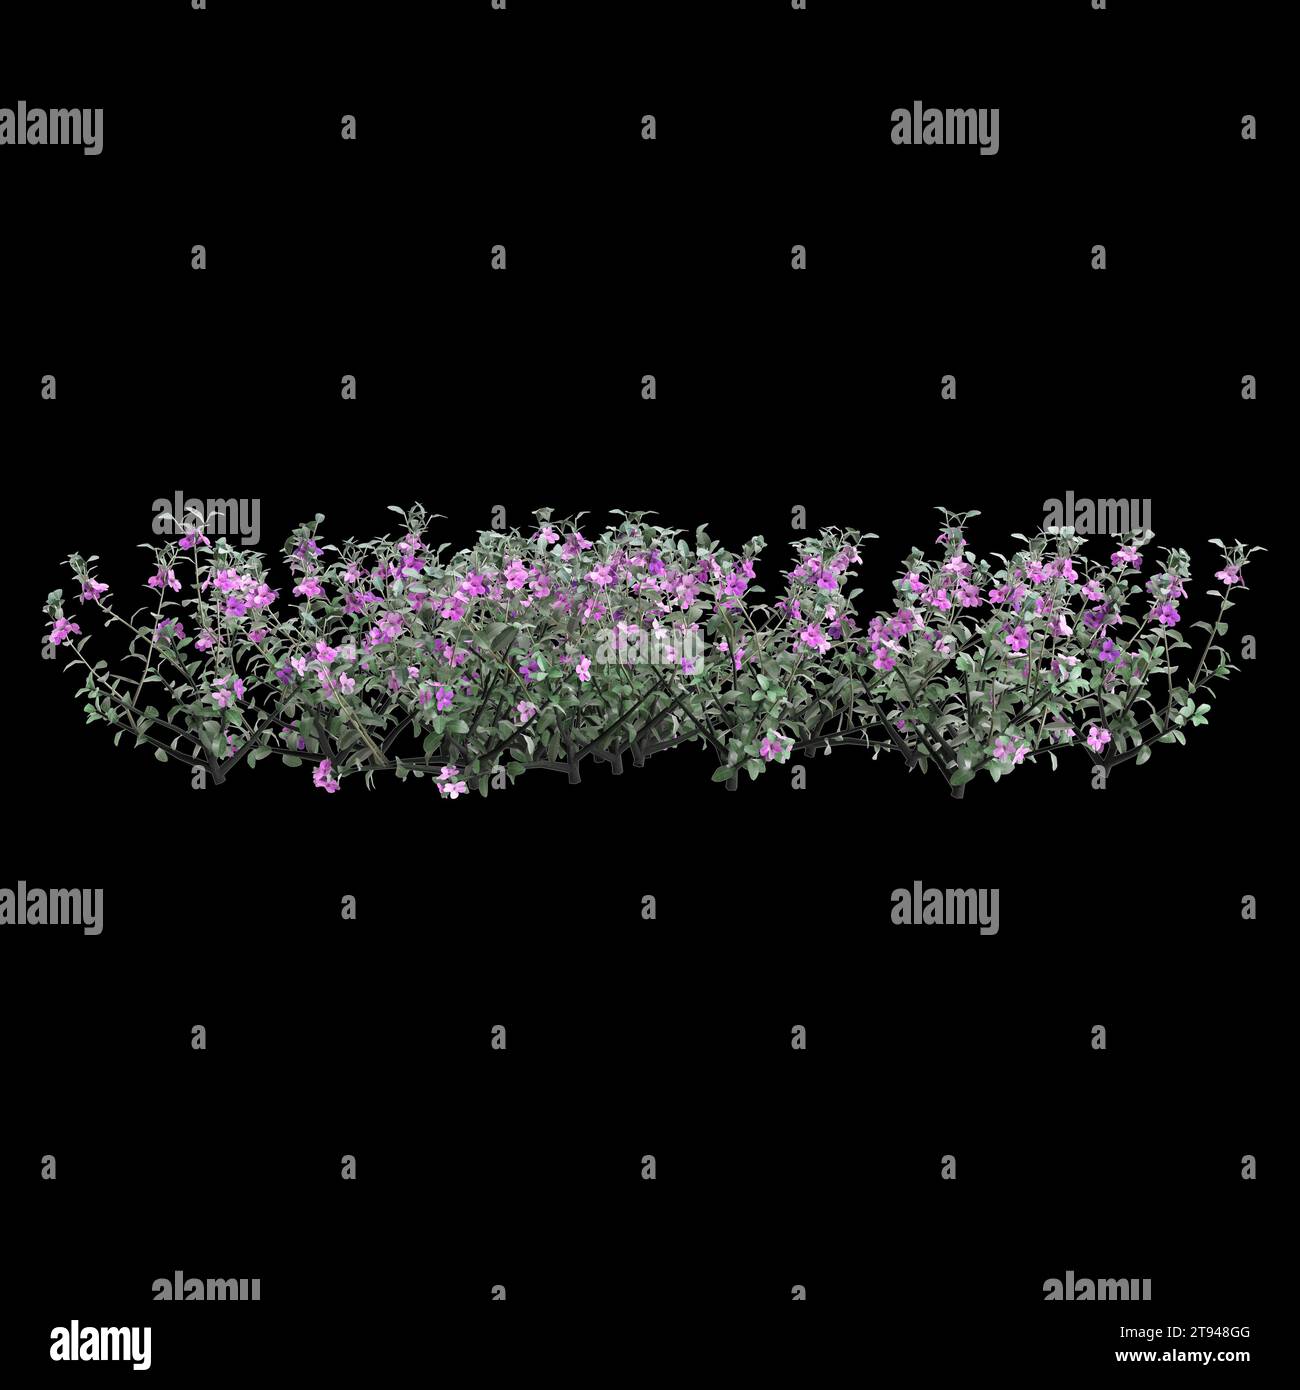 3d illustration of Leucophyllum Frutescens bush isolated on black background Stock Photo